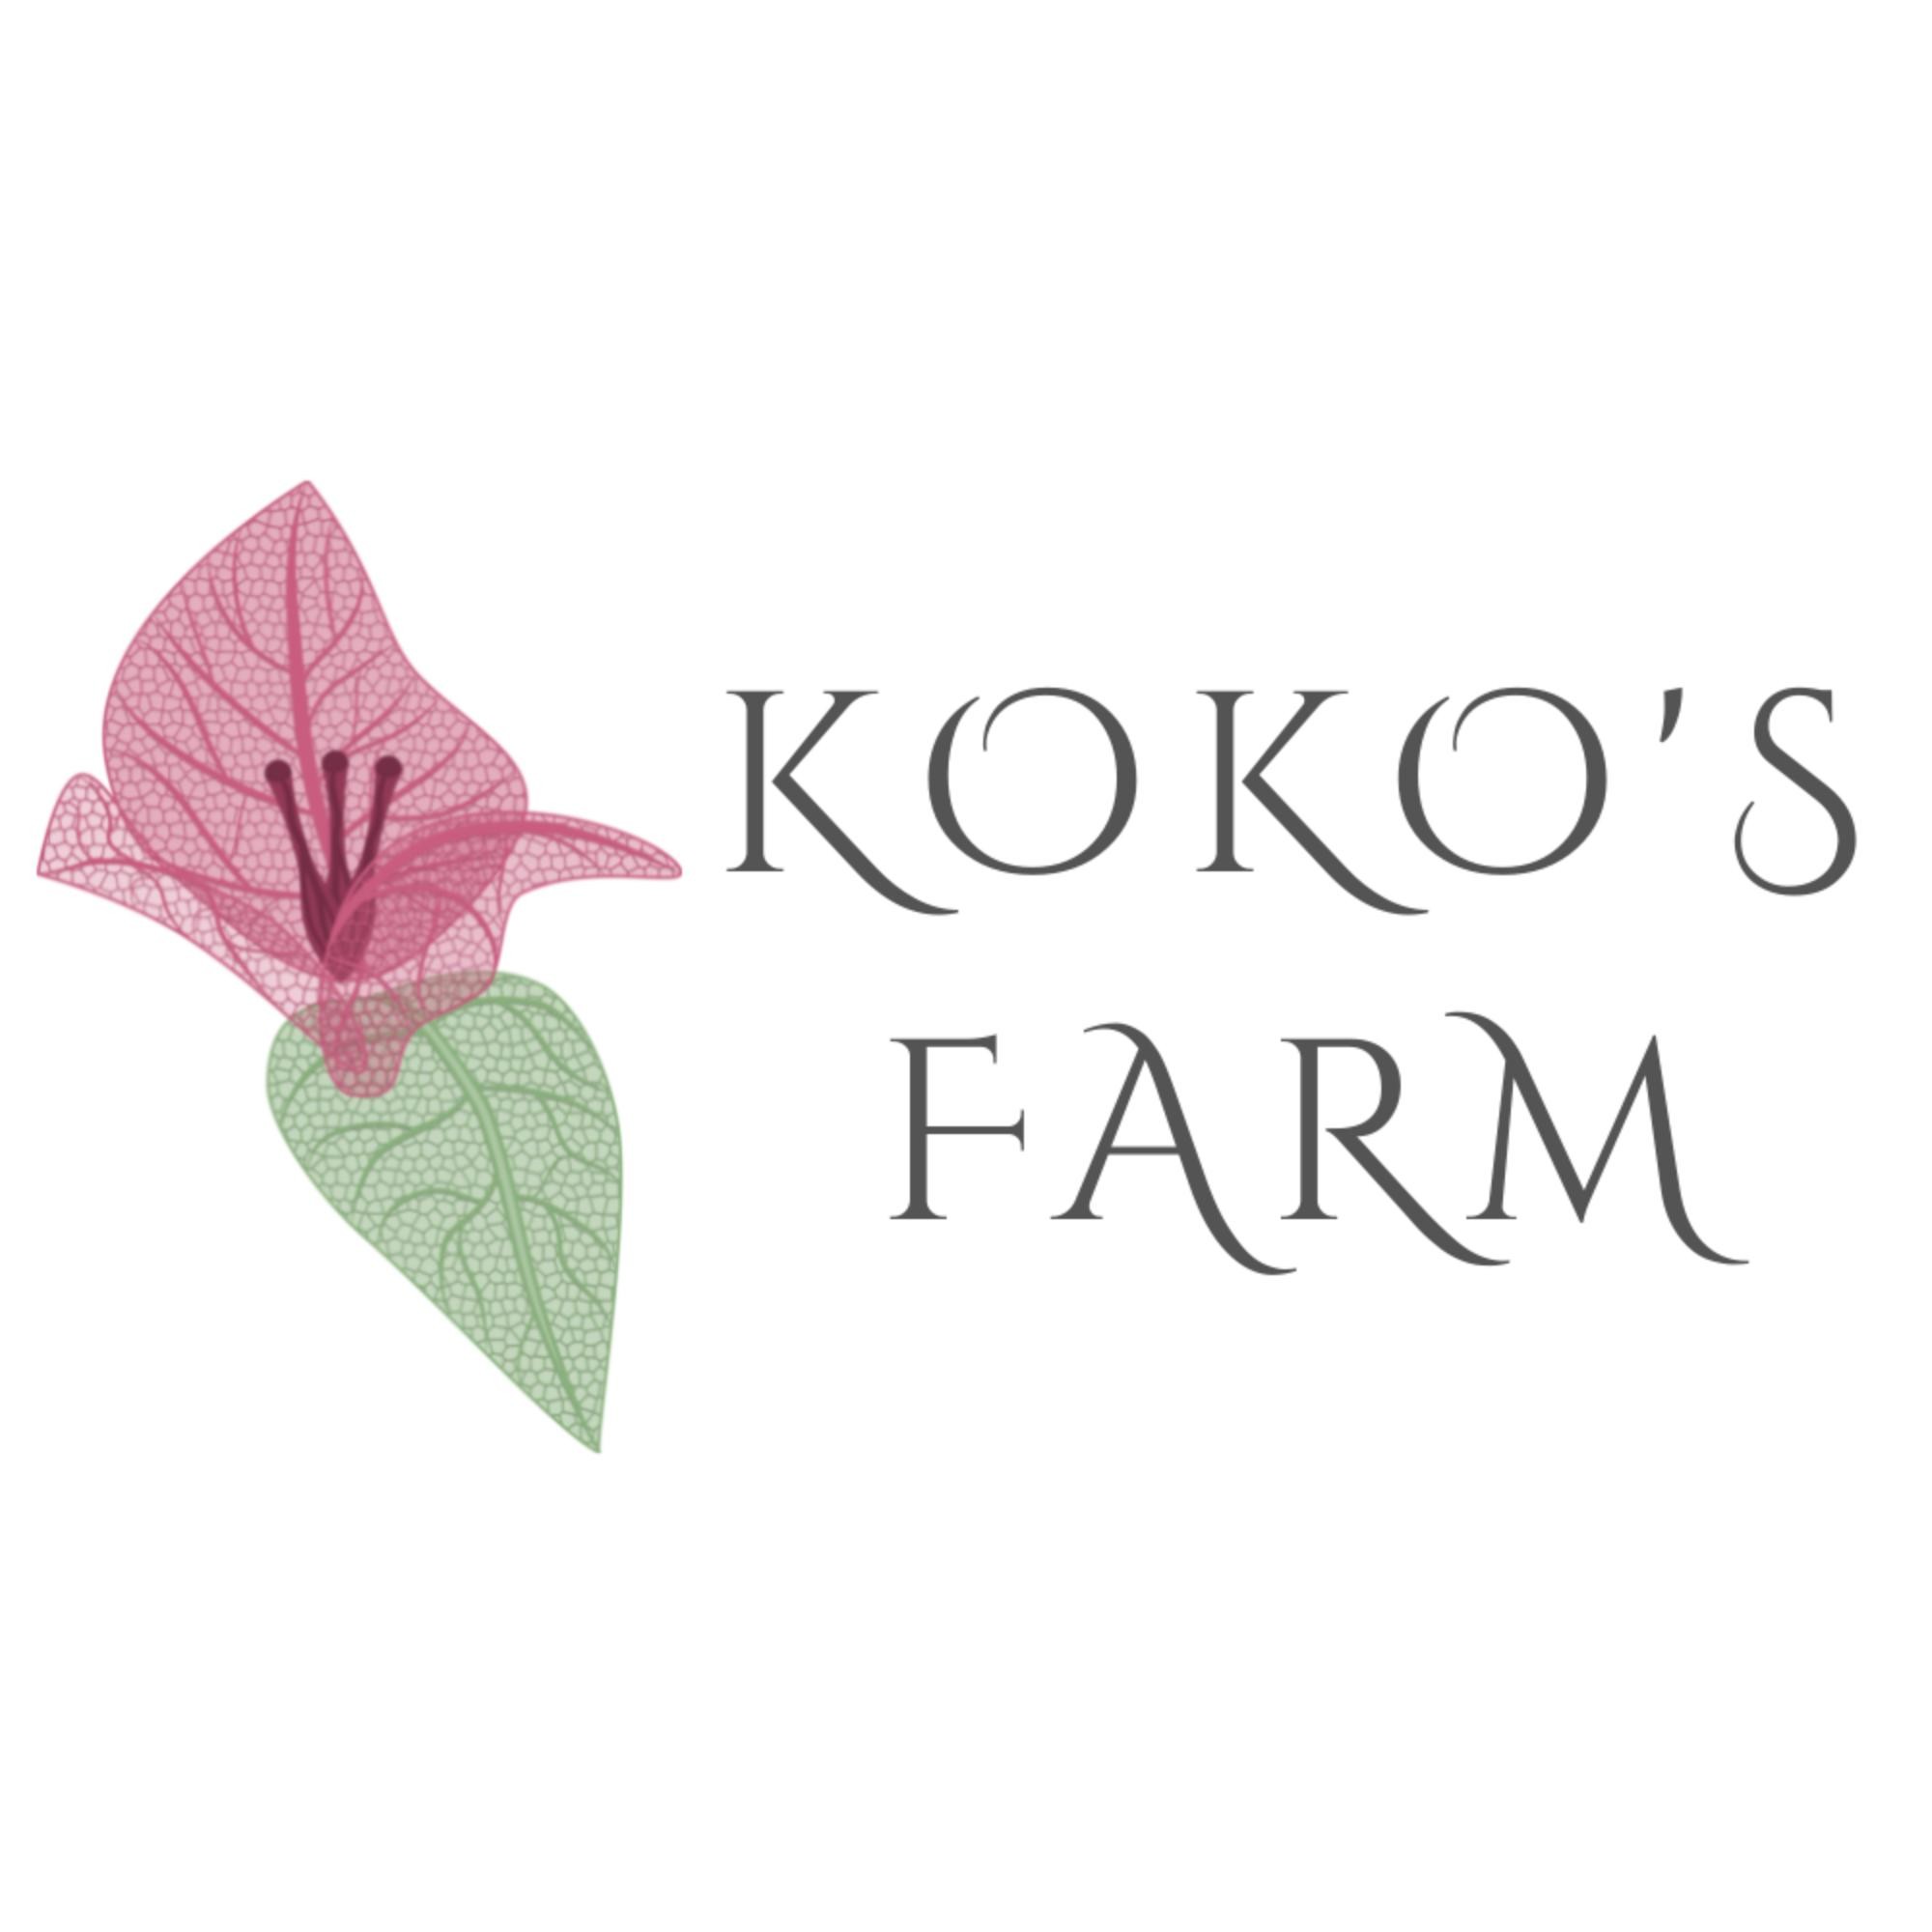 Koko's Farm